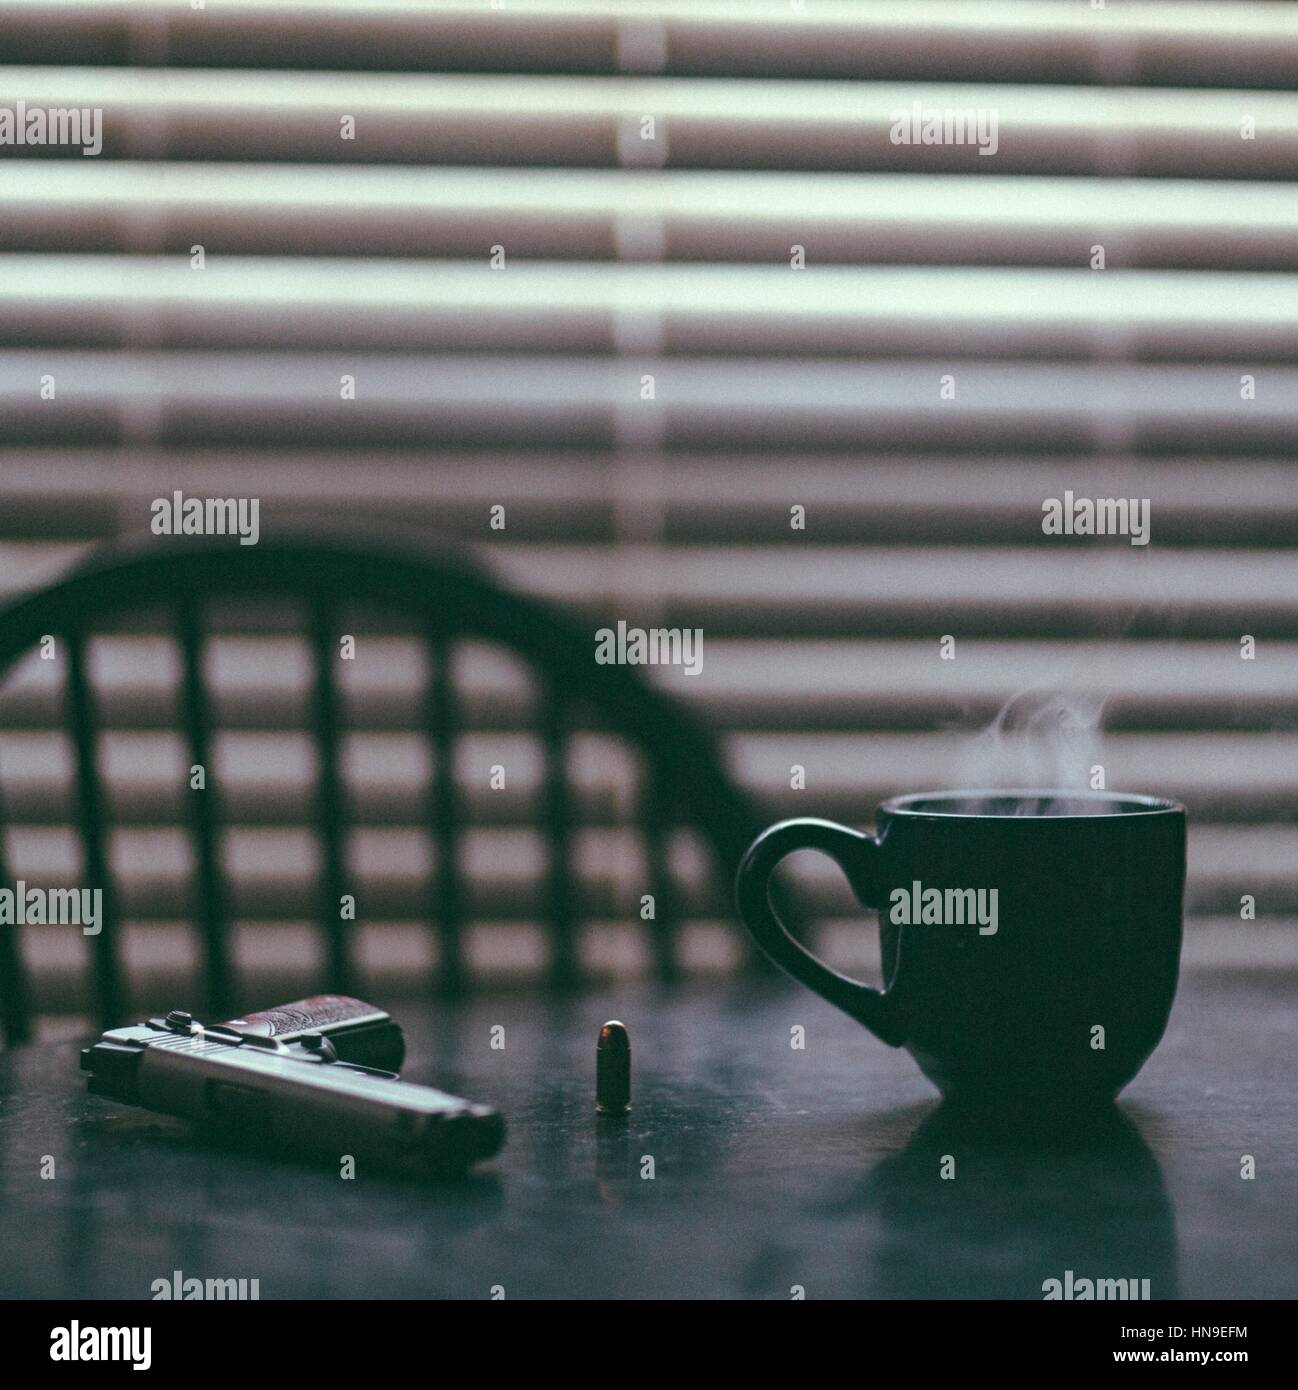 Una escena ominosa/vida fija de una mesa que sostiene una taza caliente de café, una pistola, y una sola bala. En el fondo hay una sola silla y persianas cerradas Foto de stock